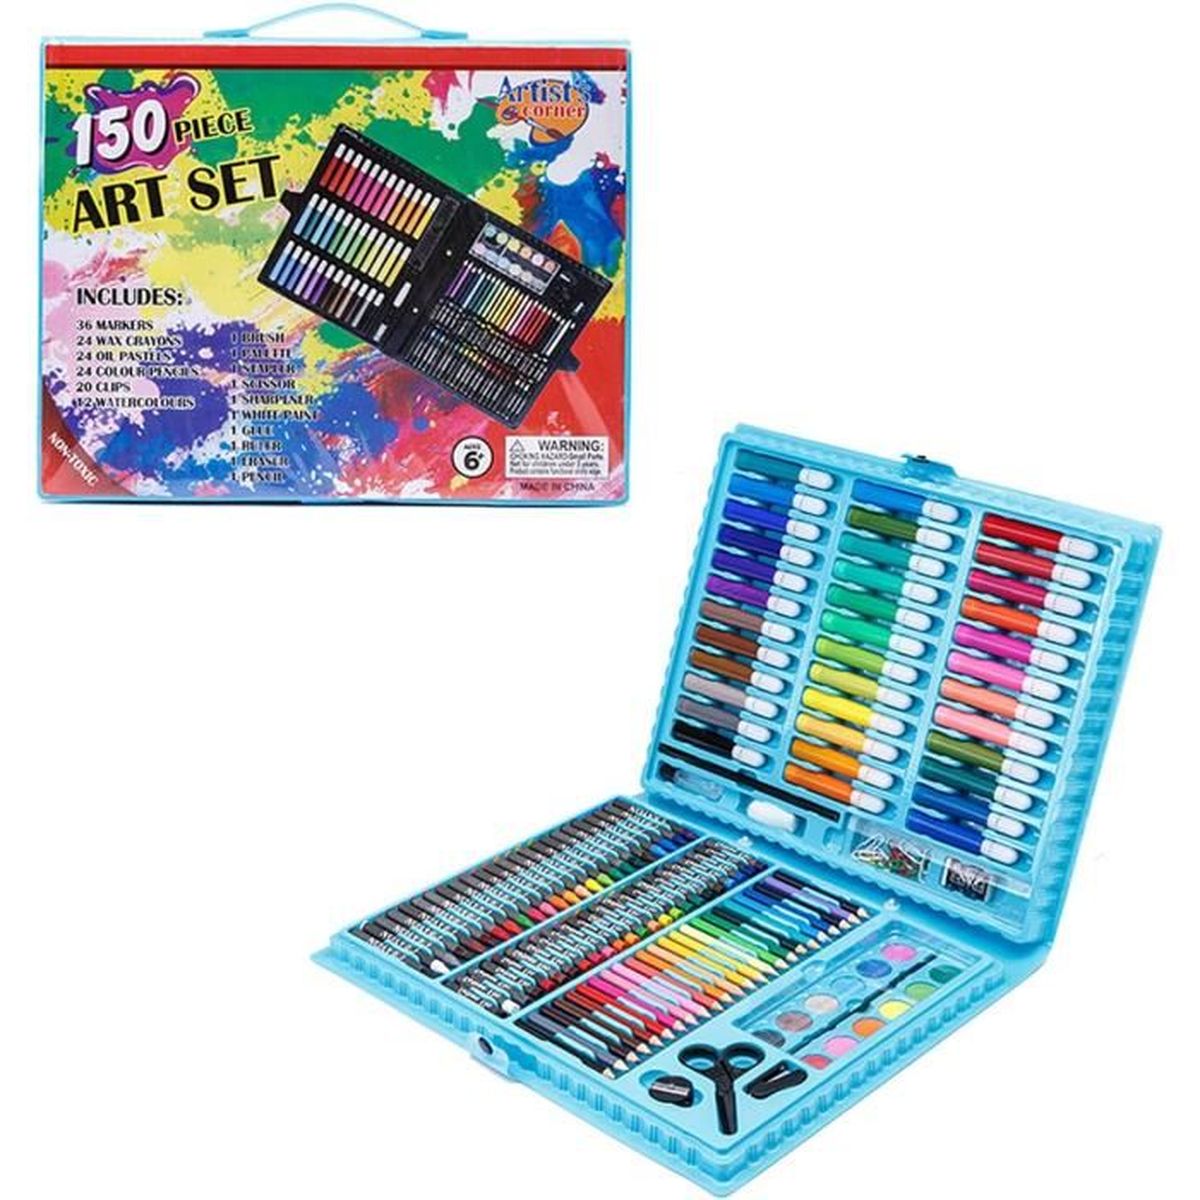 DALY Kit de coloriage peindre, colorier et dessiner jeu créatif